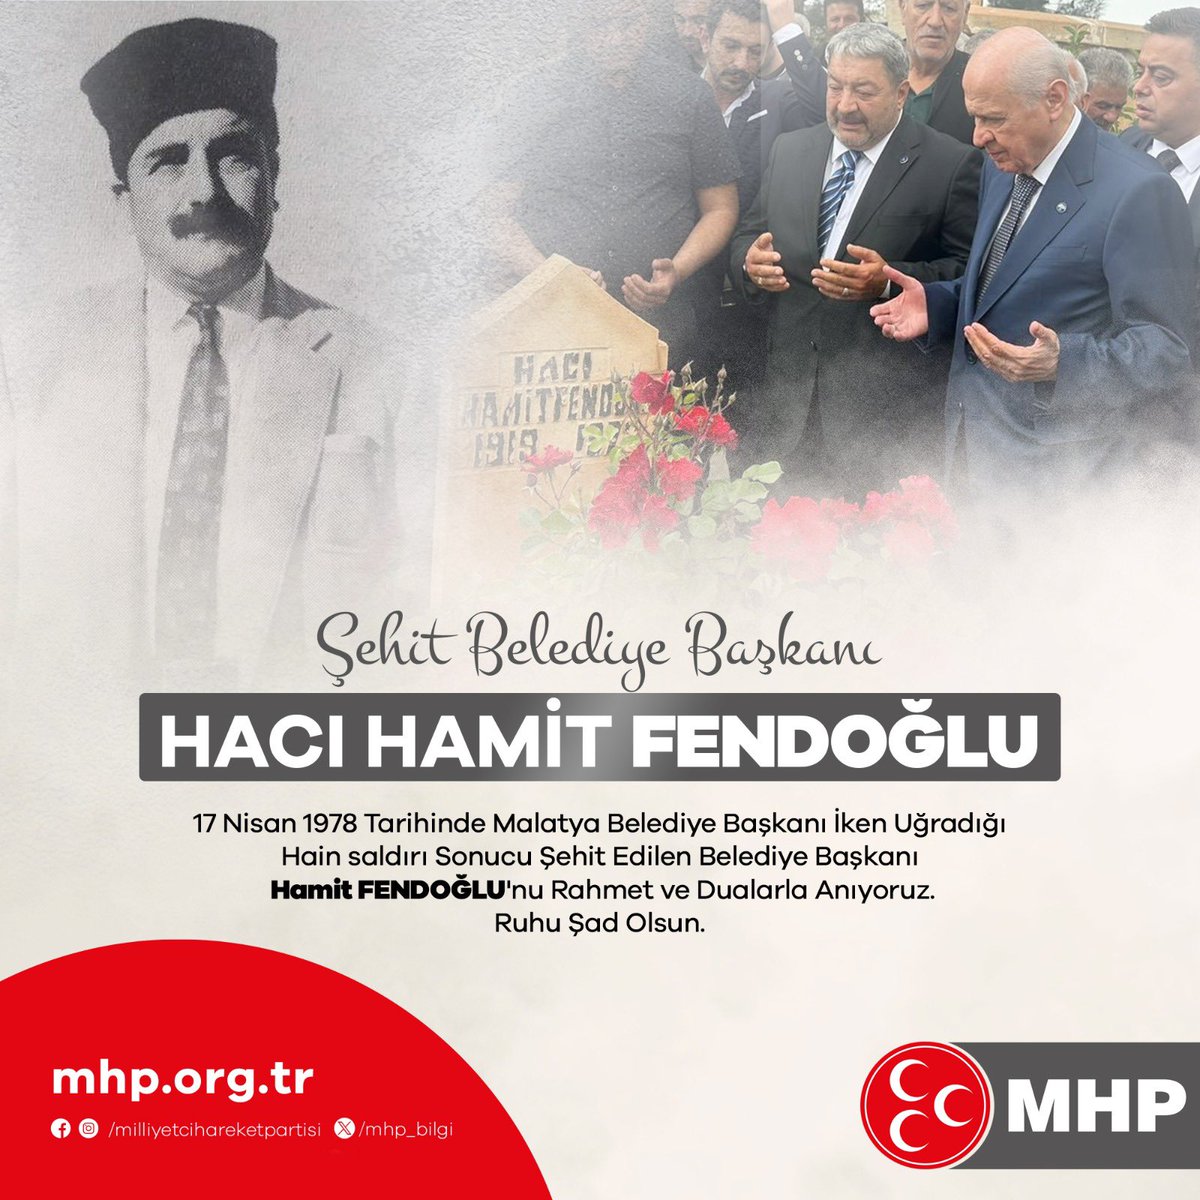 17 Nisan 1978 tarihinde Malatya Belediye Başkanı iken uğradığı hain saldırı sonucu şehit edilen Belediye Başkanı Hamit FENDOĞLU'nu rahmet ve dualarla anıyoruz. Ruhu şad olsun.